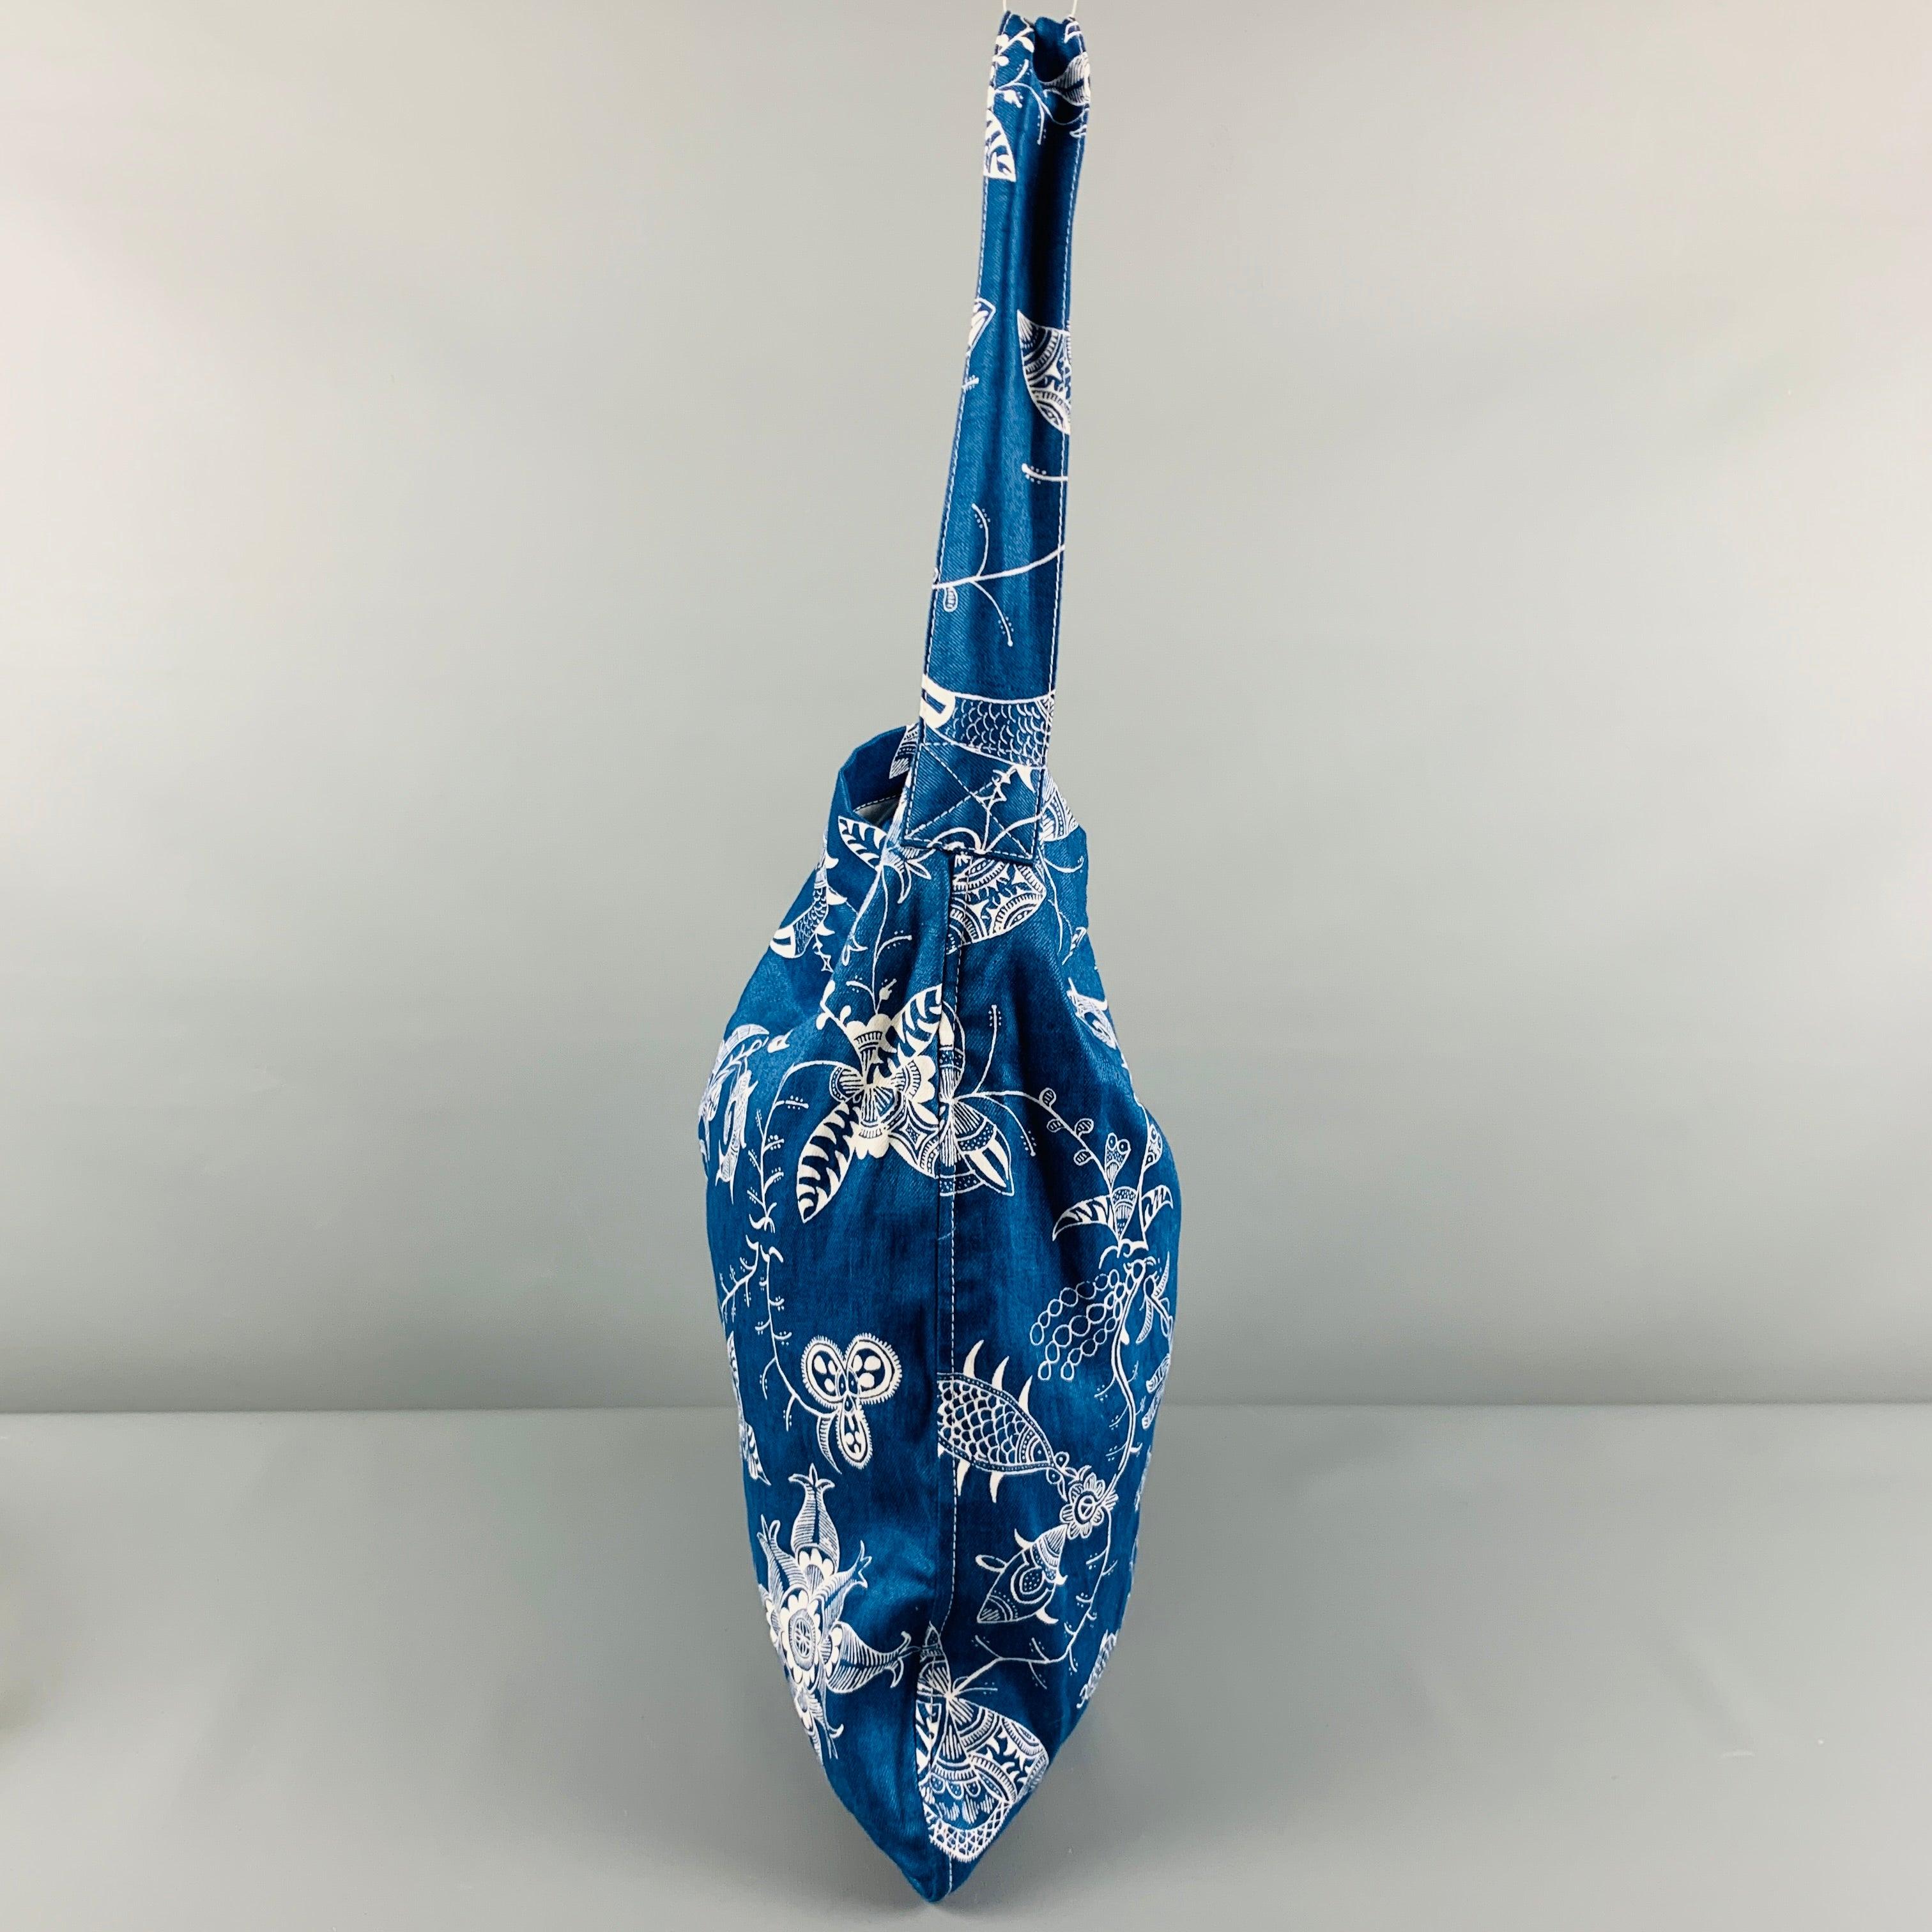 JUNYA WATANABE-Tasche
in blau-weißem Leinenstoff mit abstraktem Blumenmuster und Druckknopfverschluss. Sehr guter gebrauchter Zustand. Leichte Gebrauchsspuren. 

Abmessungen: 
  Länge: 14 Zoll Höhe: 16 Zoll Fallhöhe: 10,5 Zoll 
  
  
 
Referenz-Nr.: